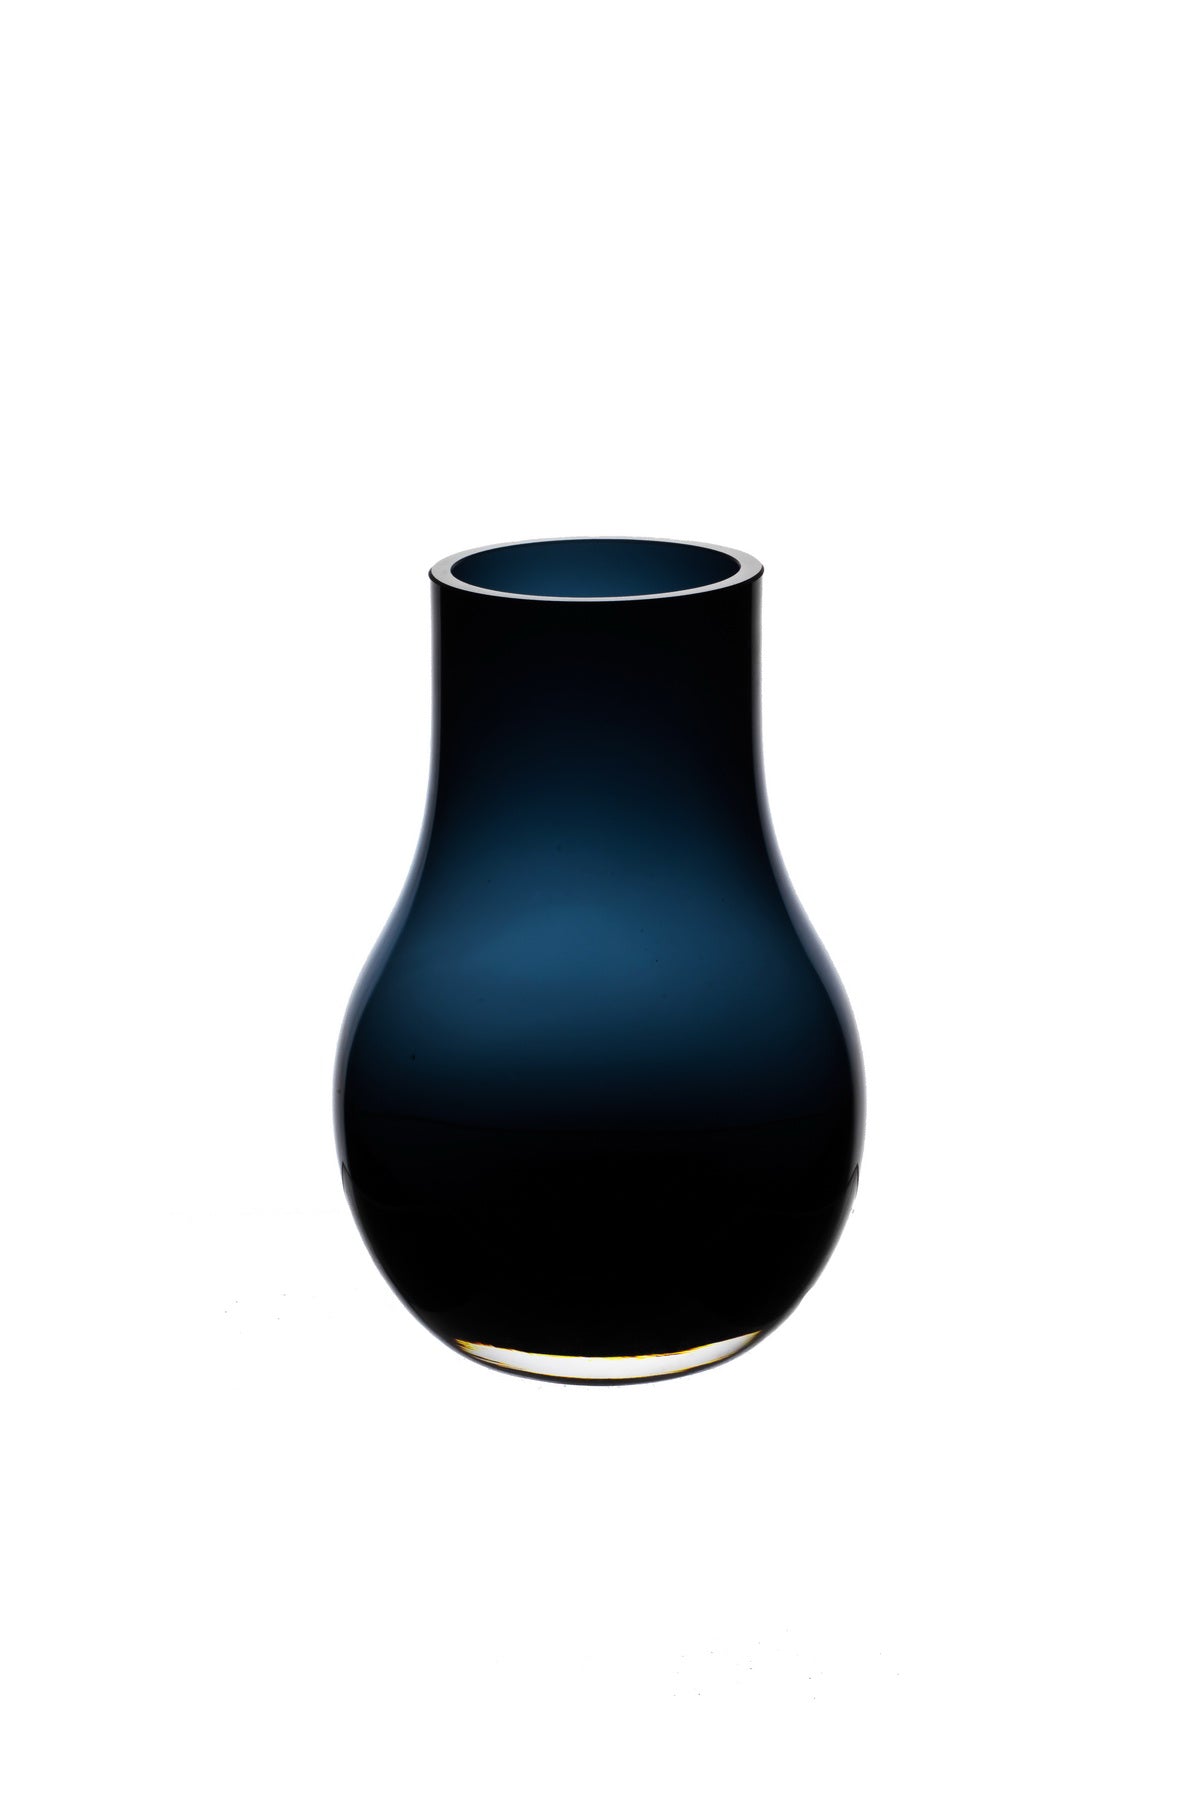 Moderne elegante vaas in diepblauw kwaliteitsglas